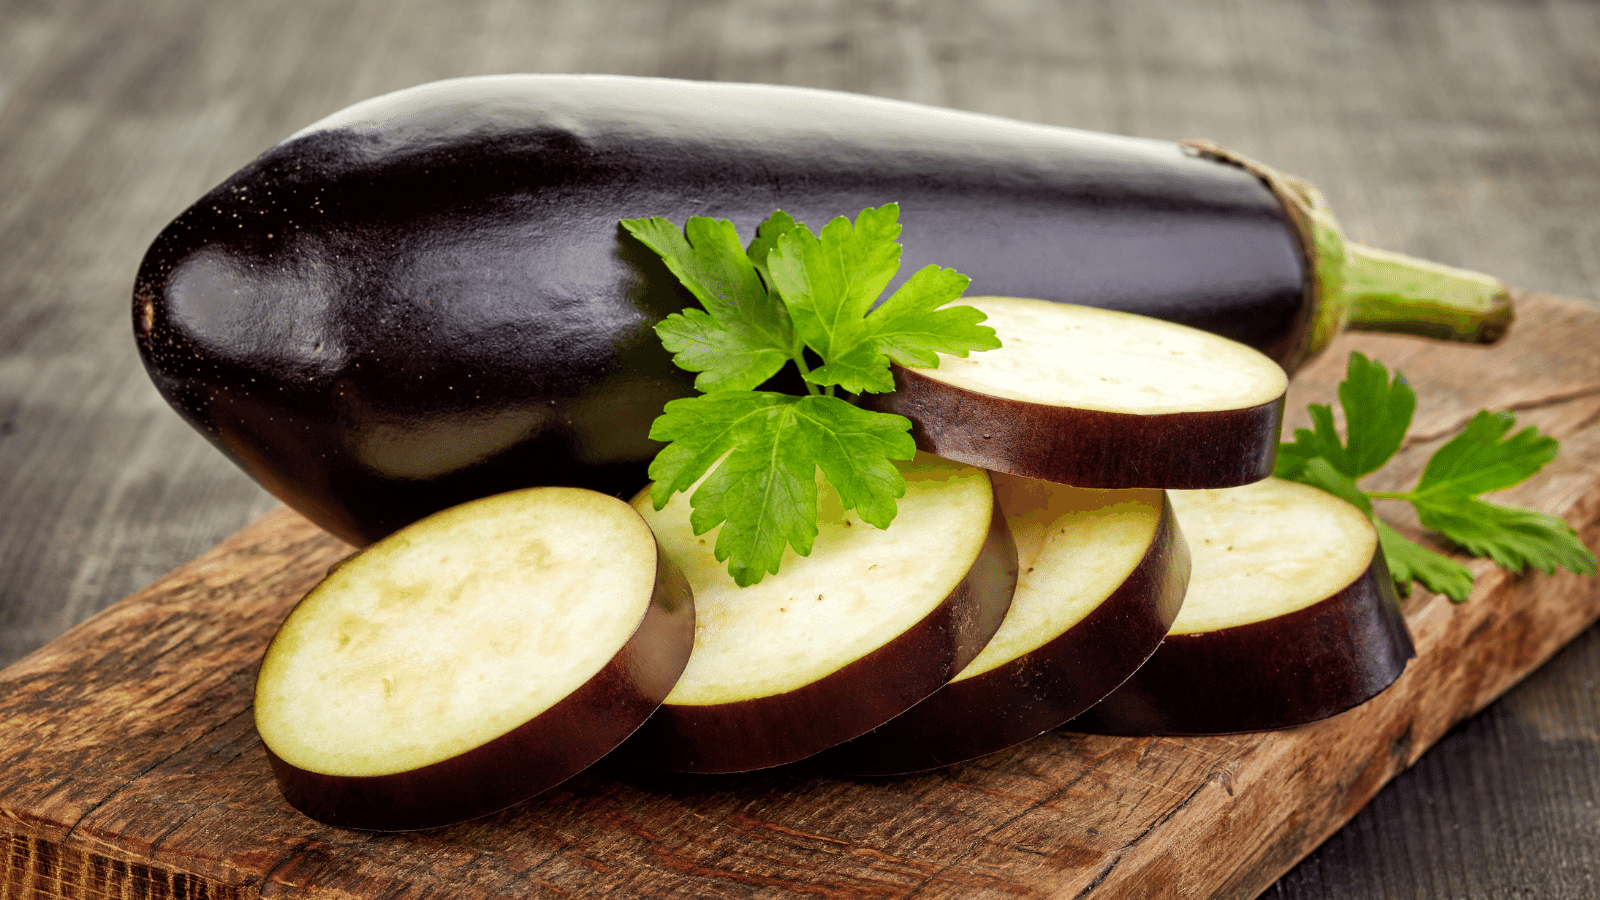 Eggplant.